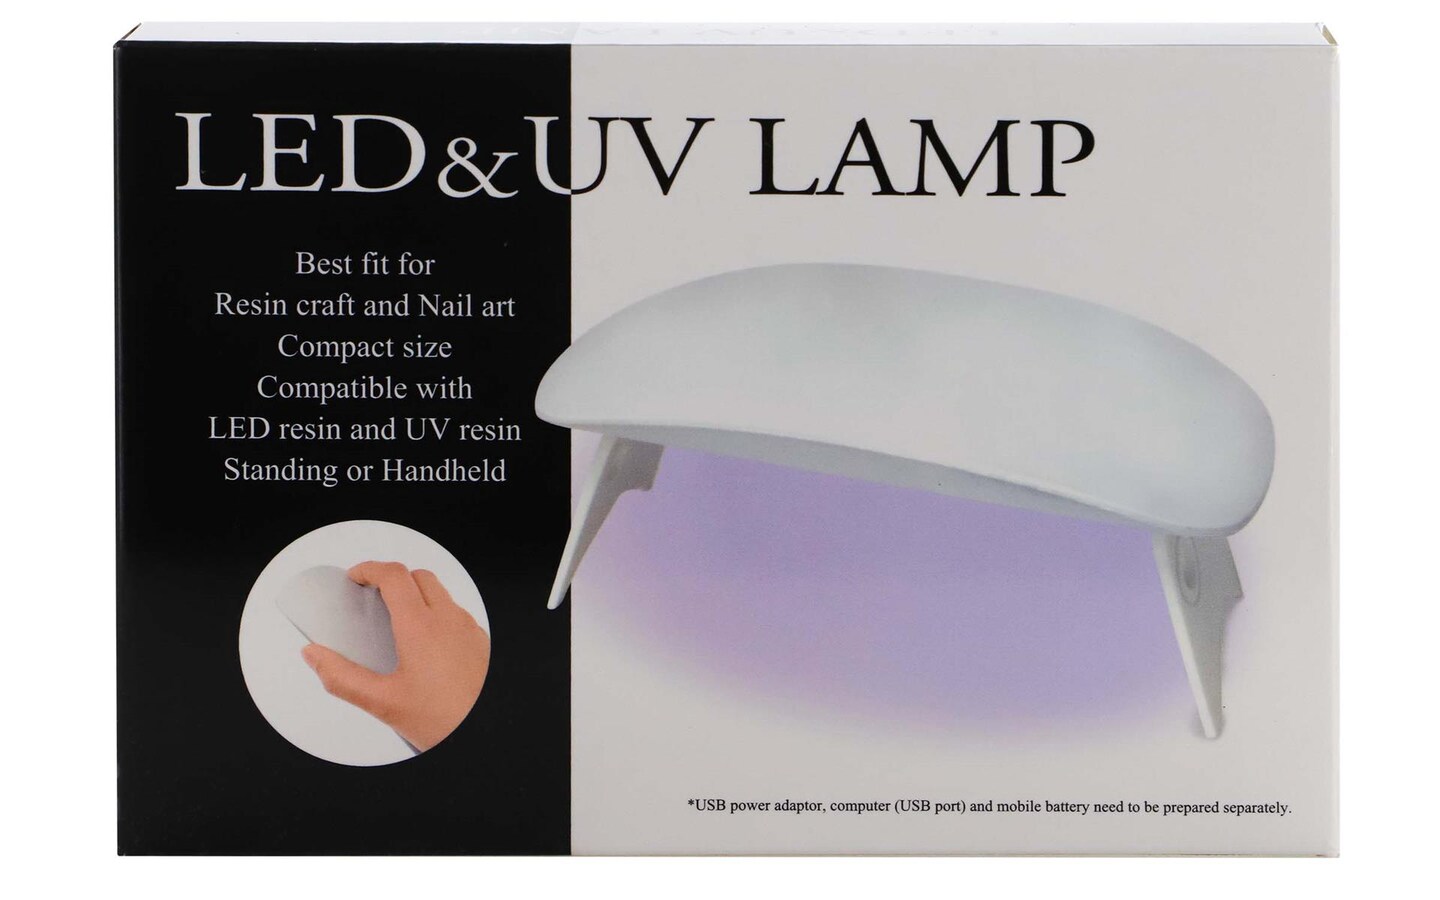 Resinate LED &#x26; UV Lamp